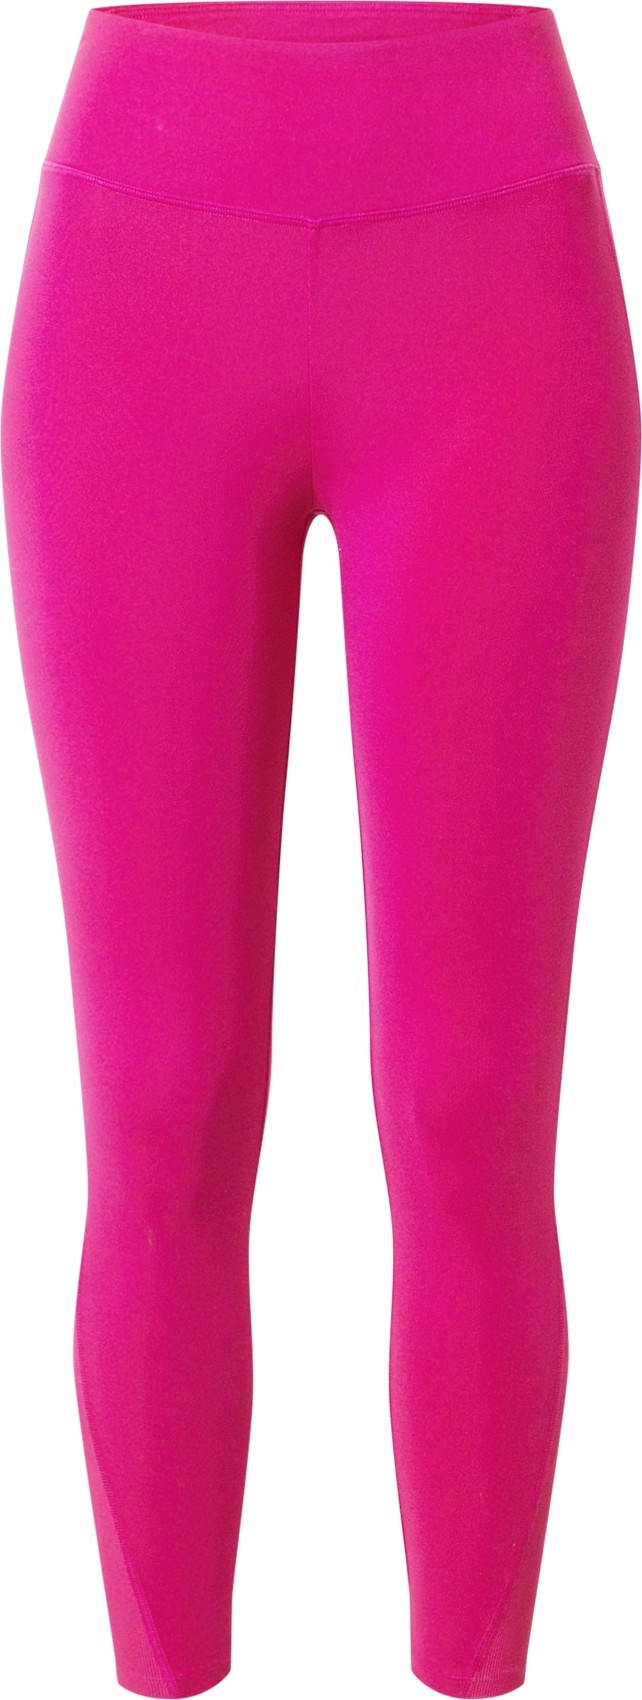 ESPRIT SPORT Sportovní kalhoty 'Edry' pink